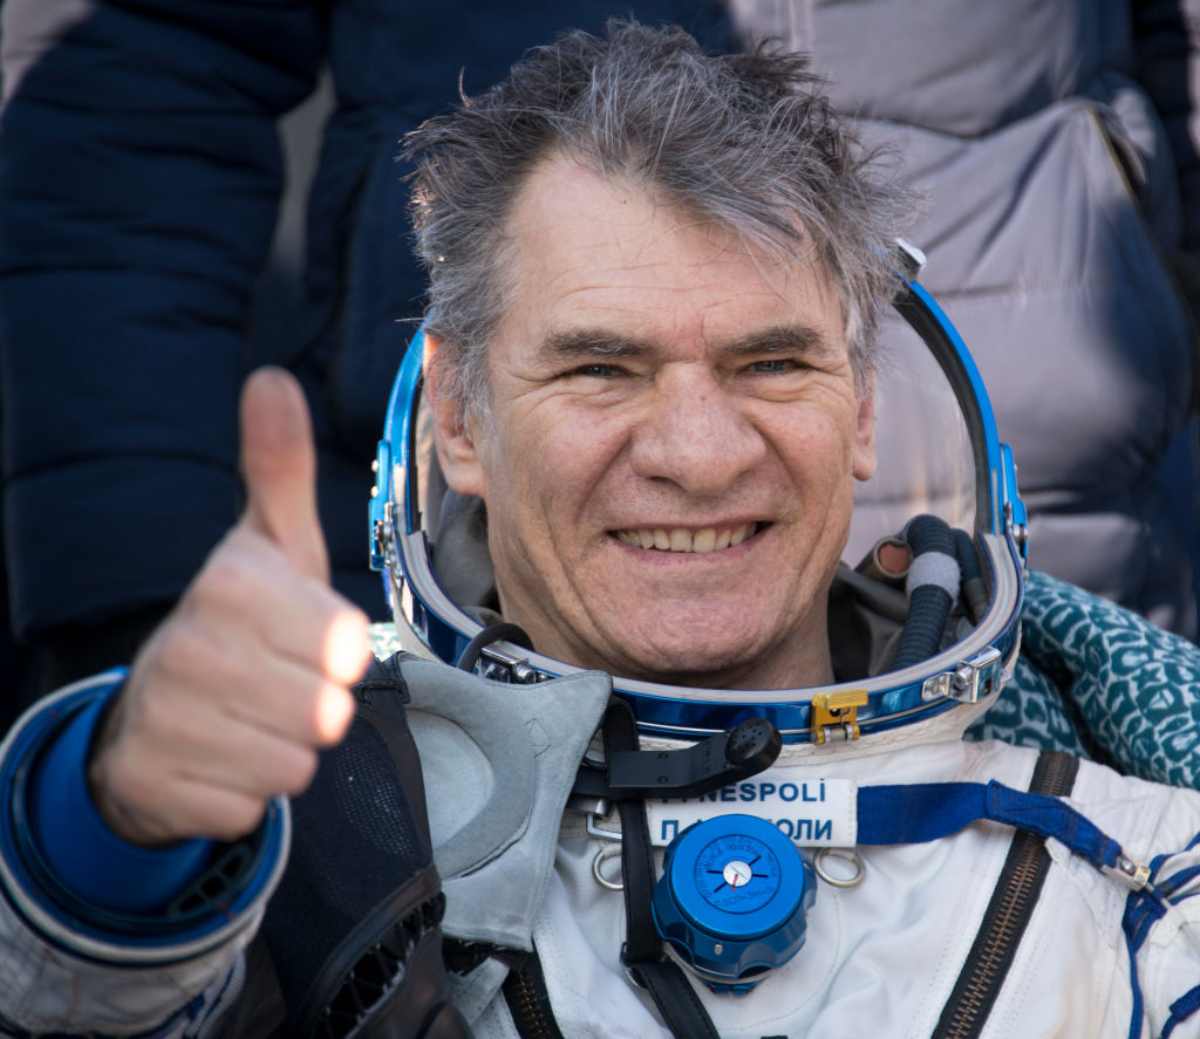 età, carriera e vita privata dell'astronauta italiano